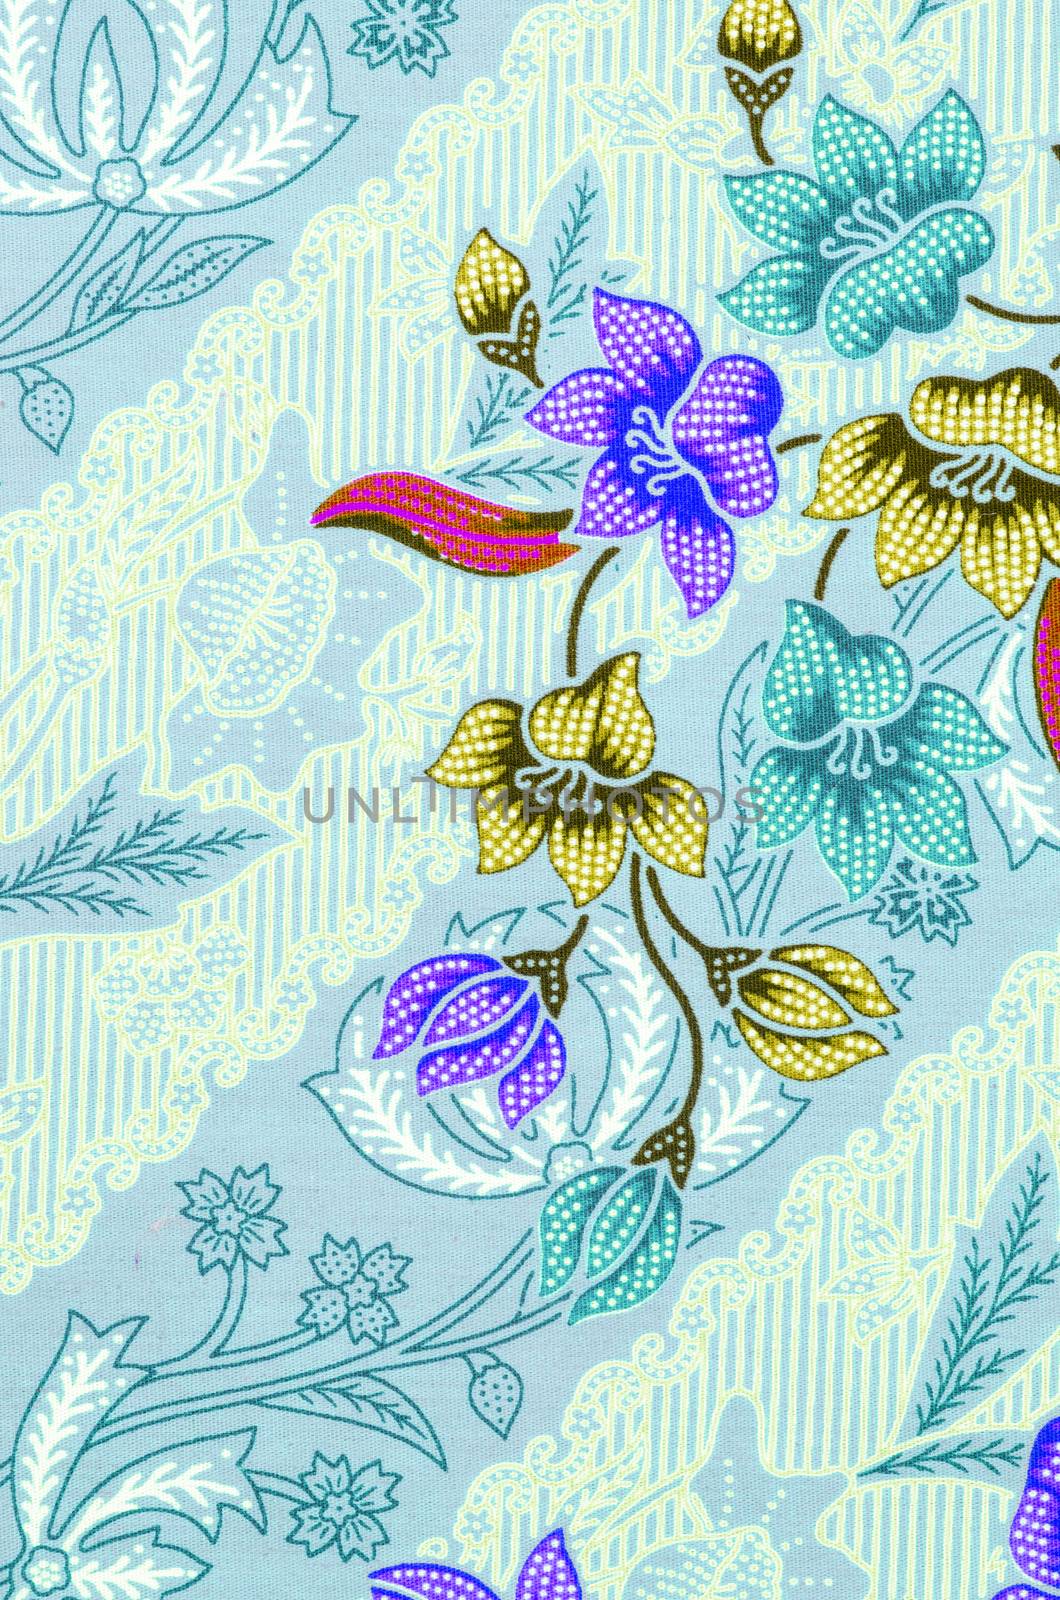 Beautiful flower pattern background on batik fabric